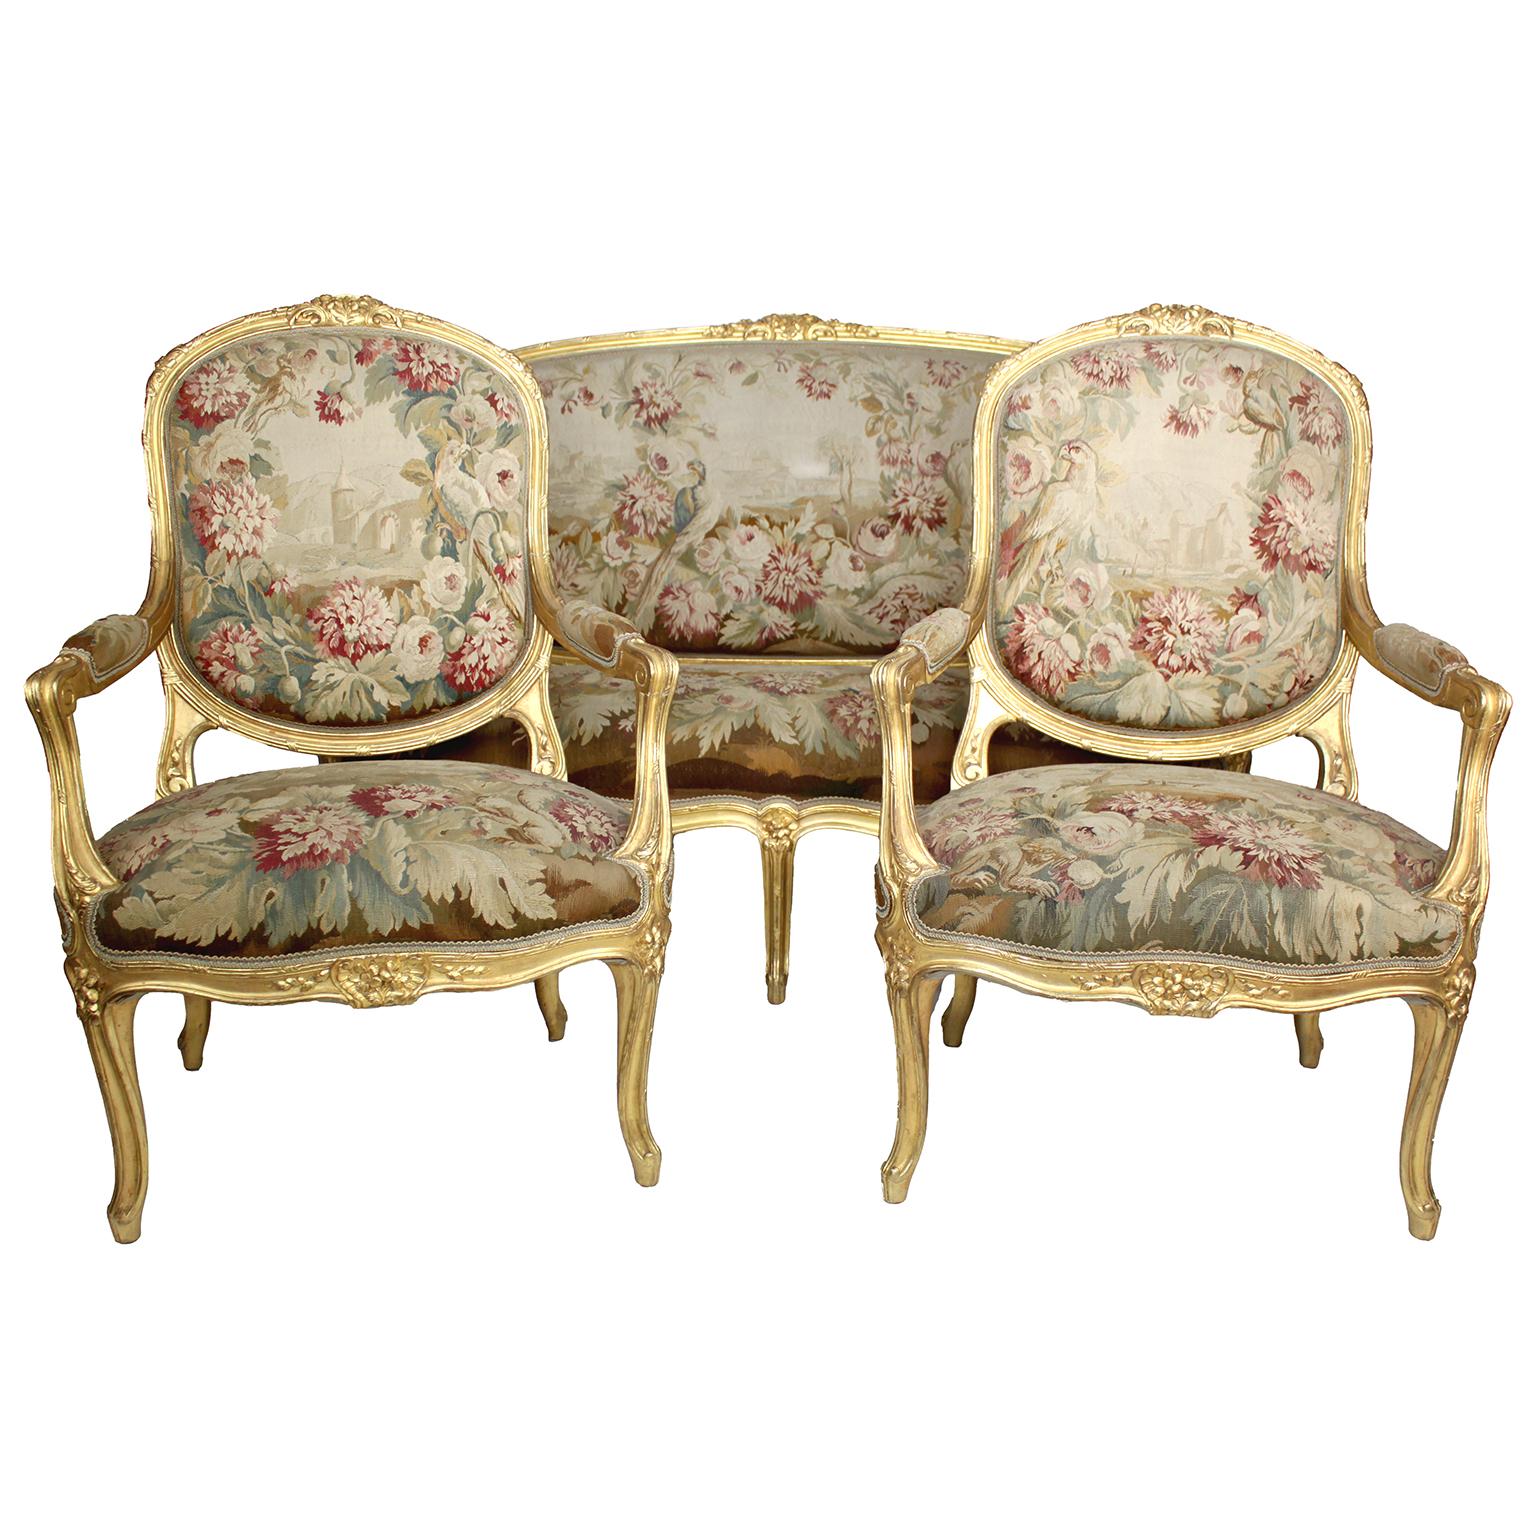 Très belle suite de salon de style Louis XV du XIXe siècle en bois doré sculpté et tapisserie d'Aubusson en soie, comprenant un canapé et deux fauteuils. La tapisserie d'Aubusson en soie présente un motif de fleurs, d'arbres, de perroquets et de